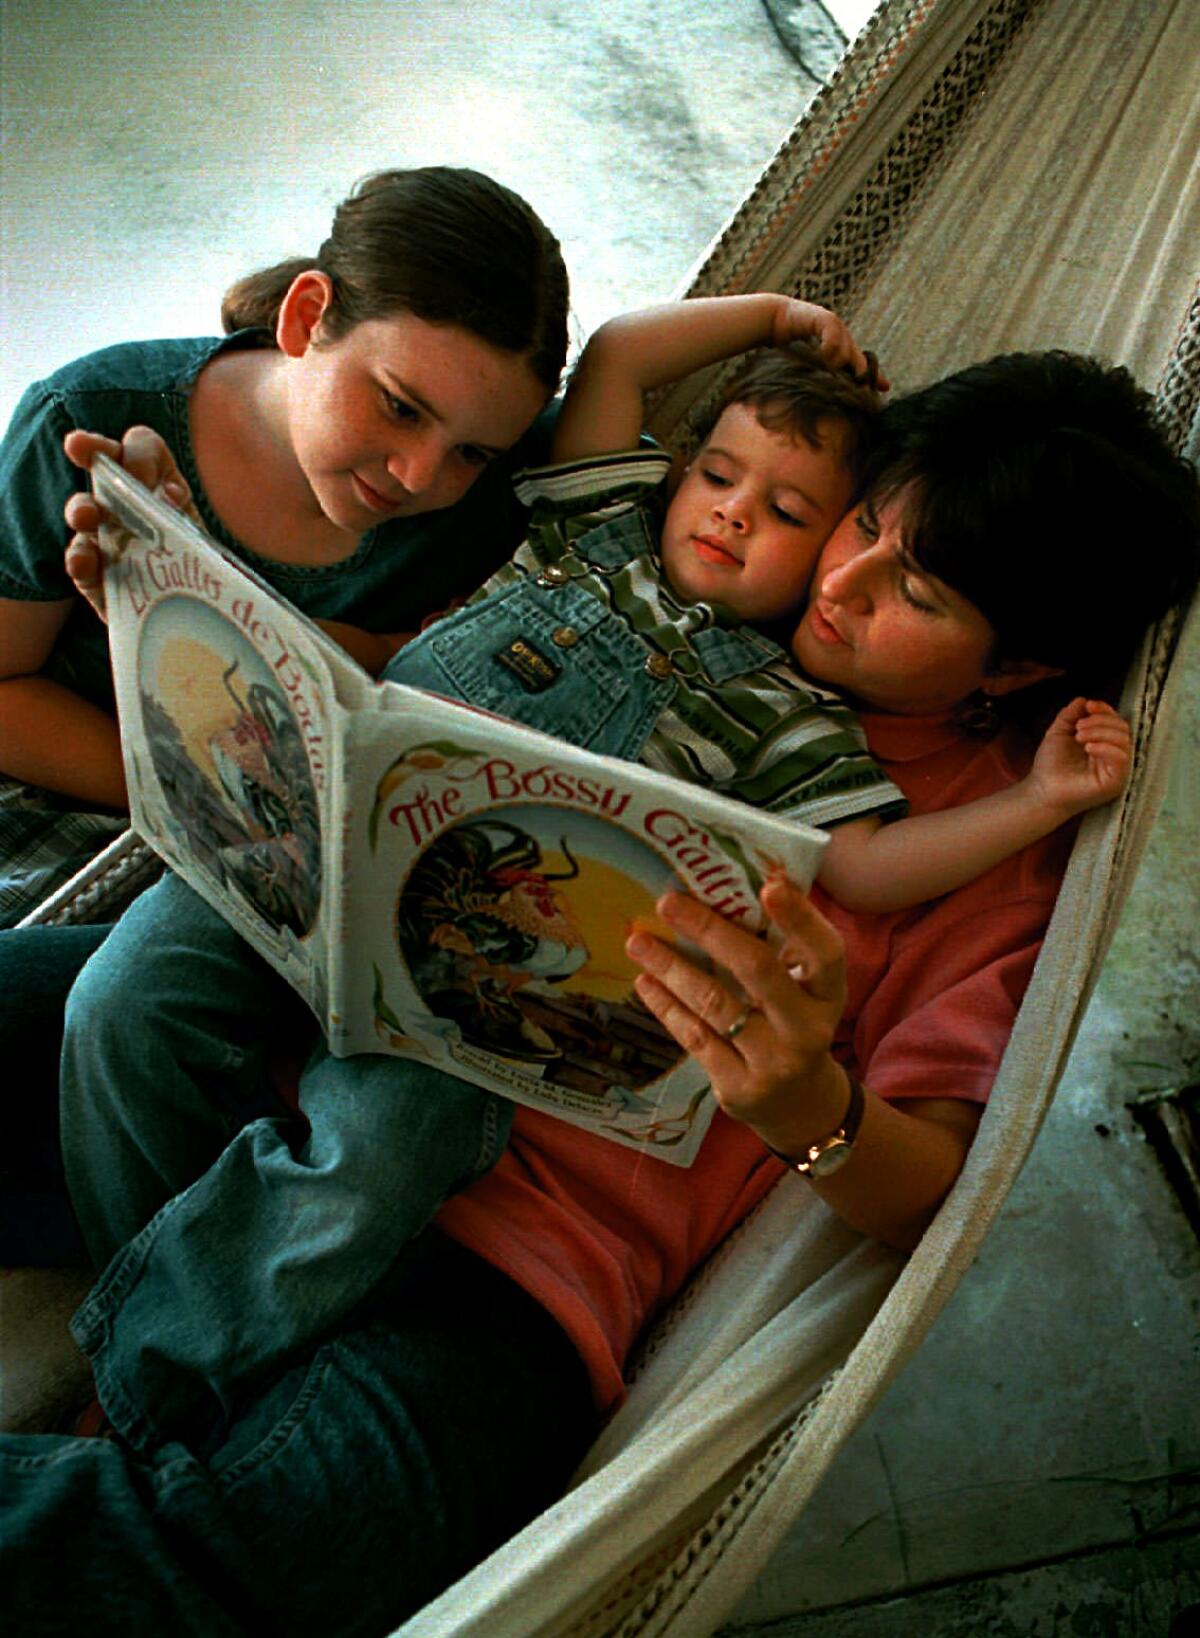 Lucía González lee su libro, el "Bossy Gallito" a sus hijos Annie, de 10 años, y José, de 3, en la hamaca en el patio trasero de su casa en Miami, Florida.